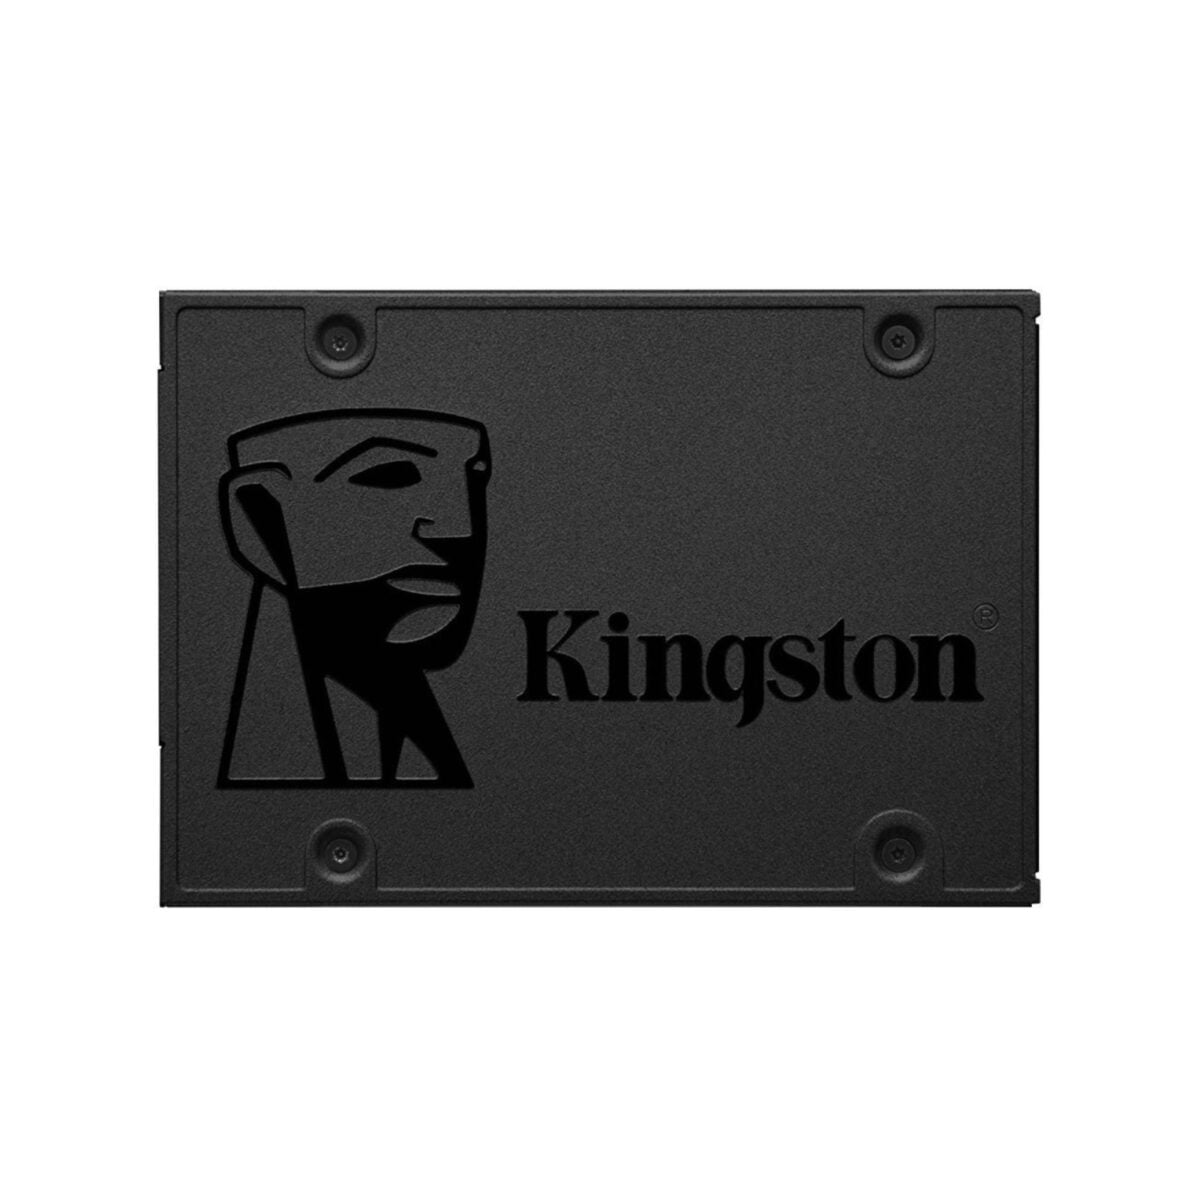 KINGSTON INTERNAL SSD A400 960GB DESKTOP STORAGE SATA 3 YEAR CARRY IN WARRANTY